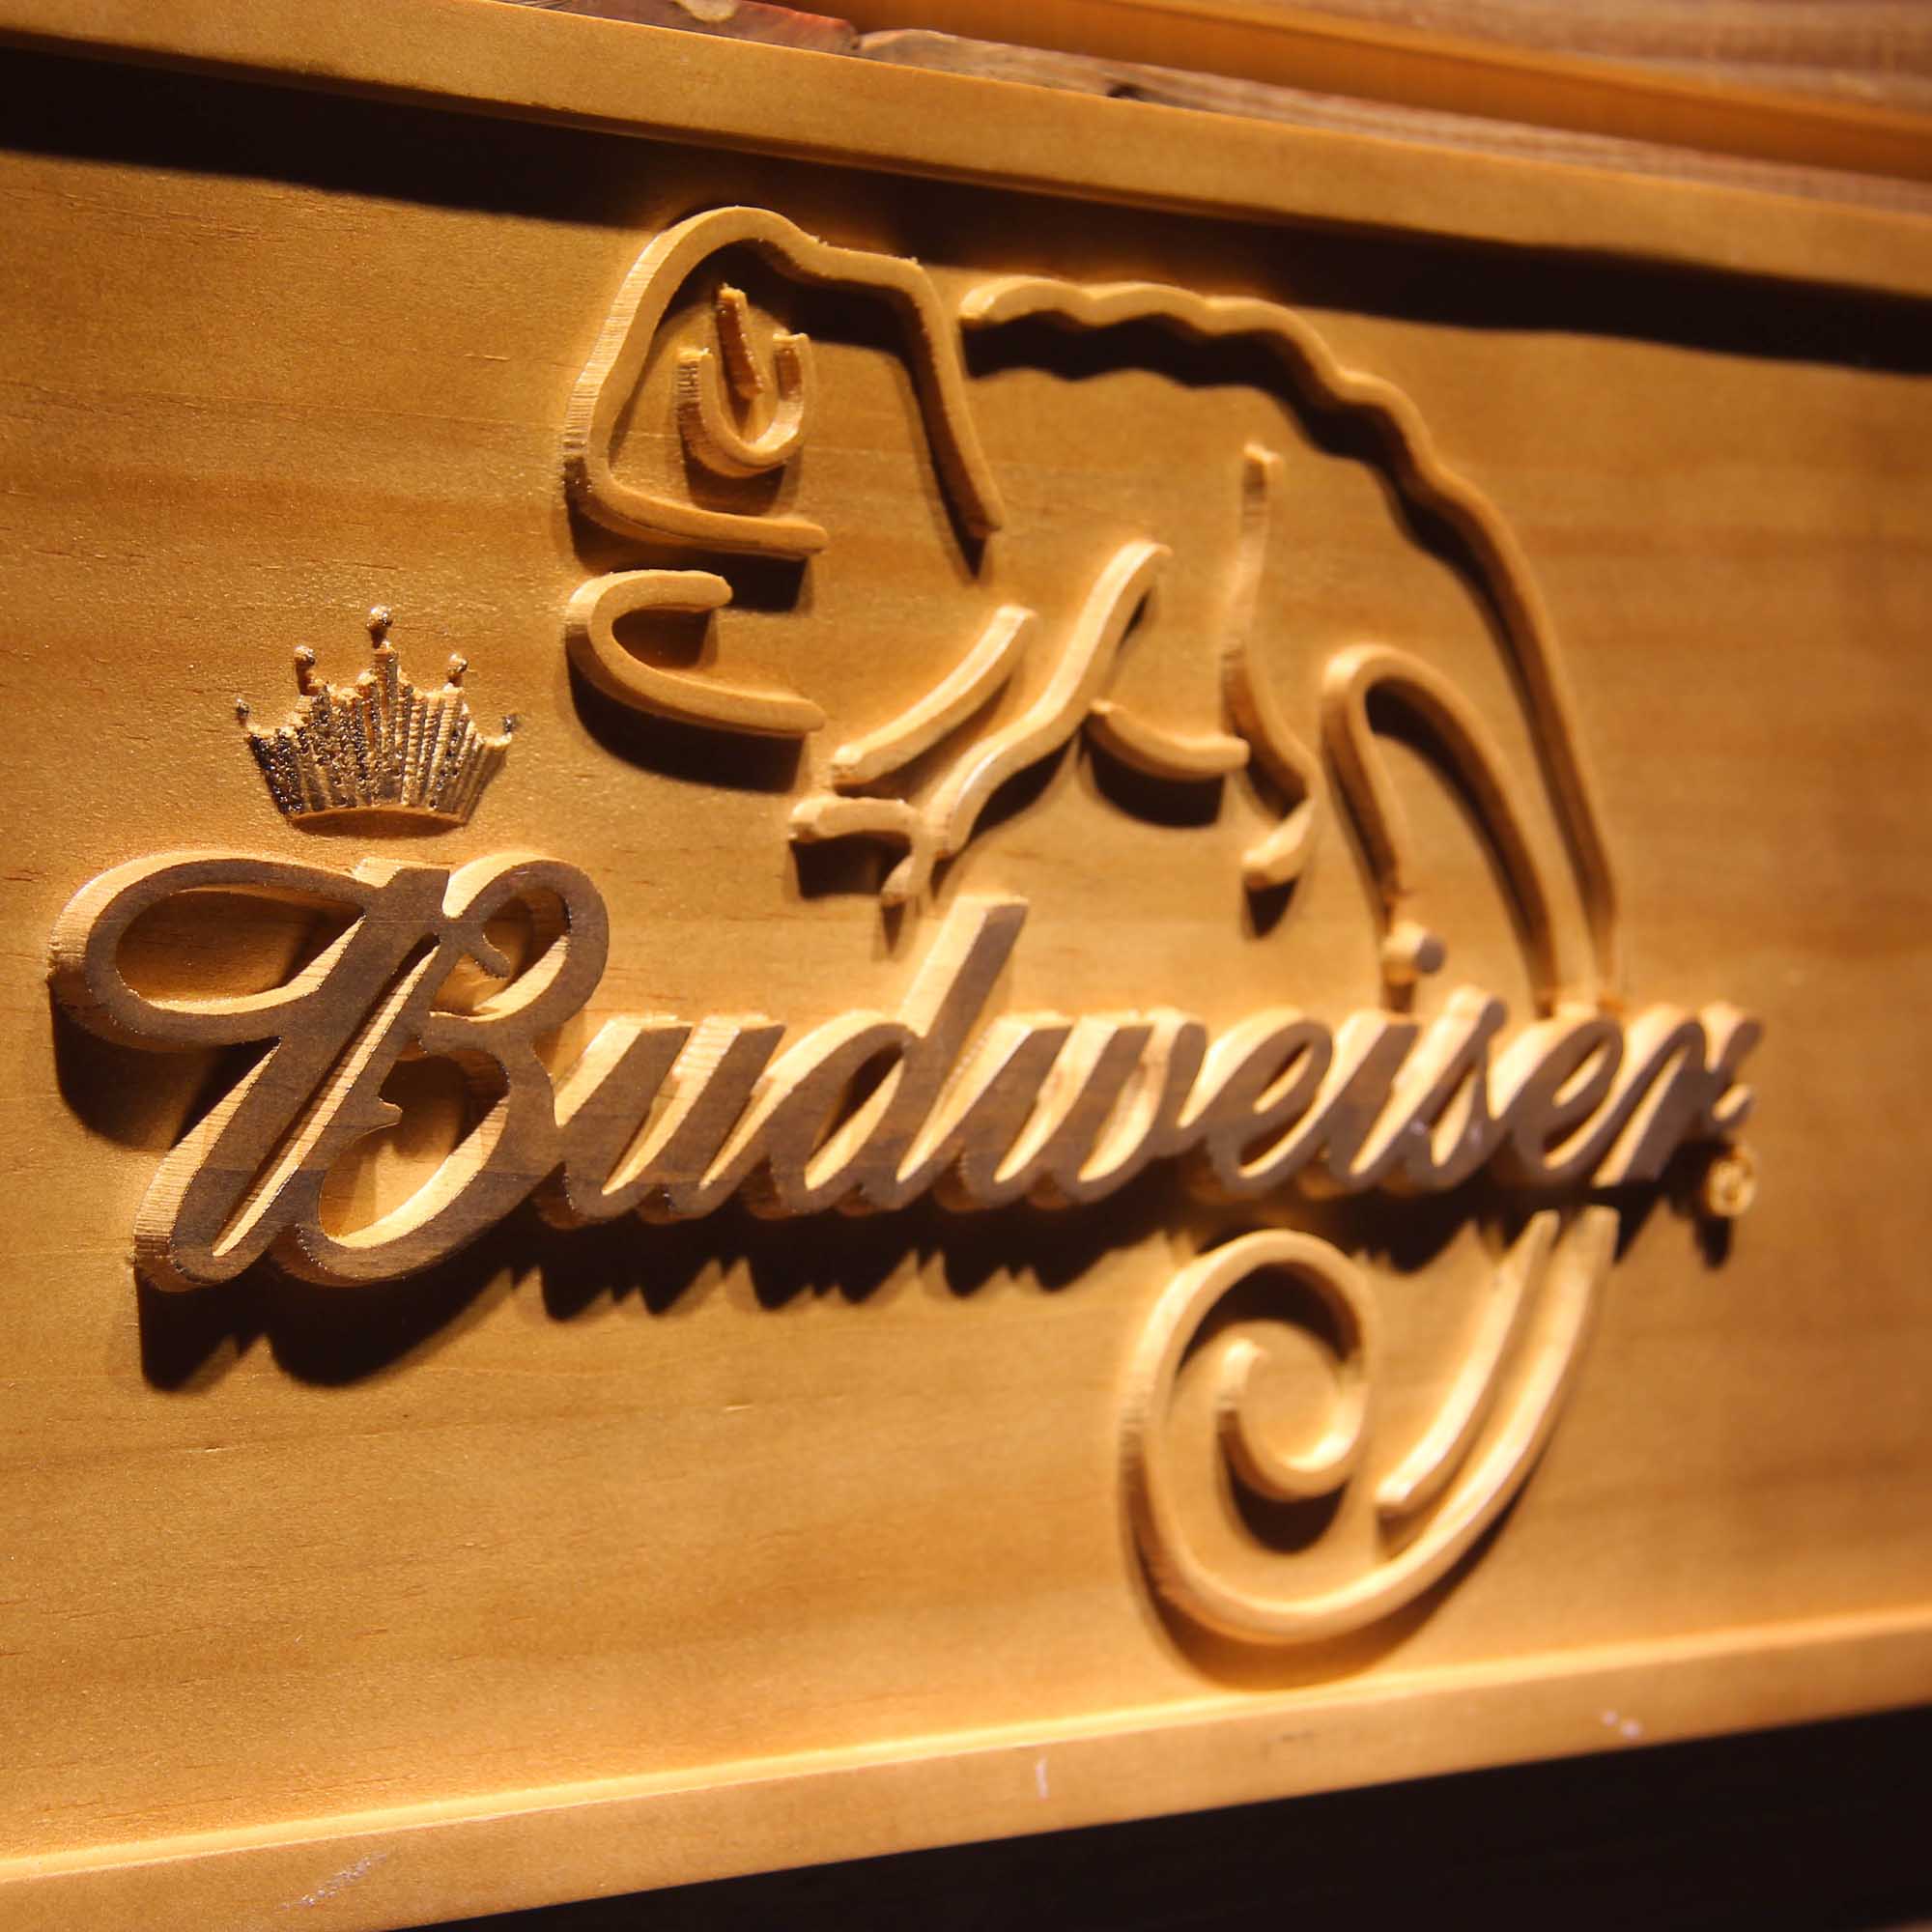 Budweiser Lizard 3D Wooden Engrave Sign